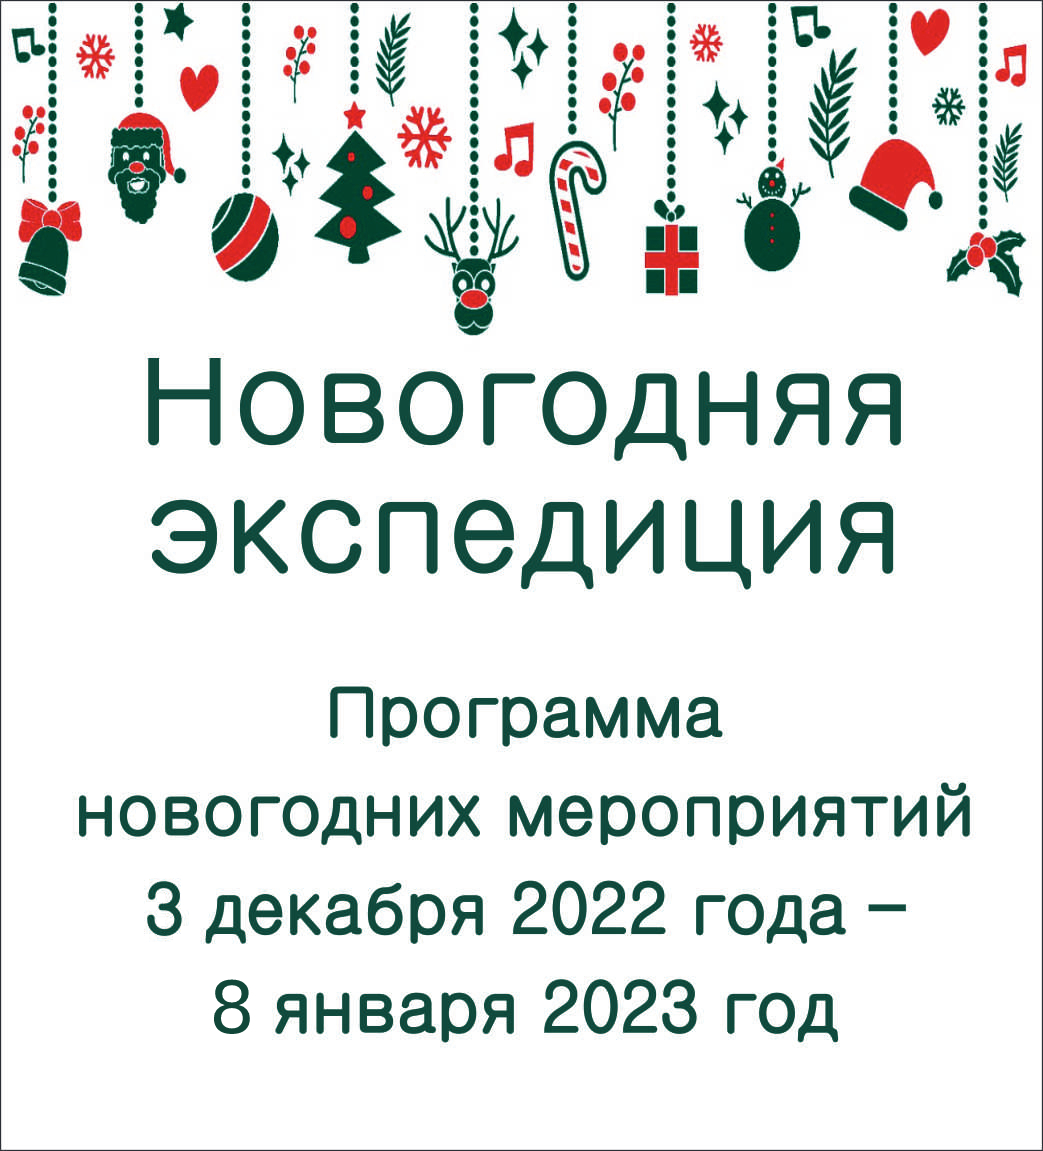 Программа новогодних мероприятий в РОМИИ декабрь 2022  – январь 2023